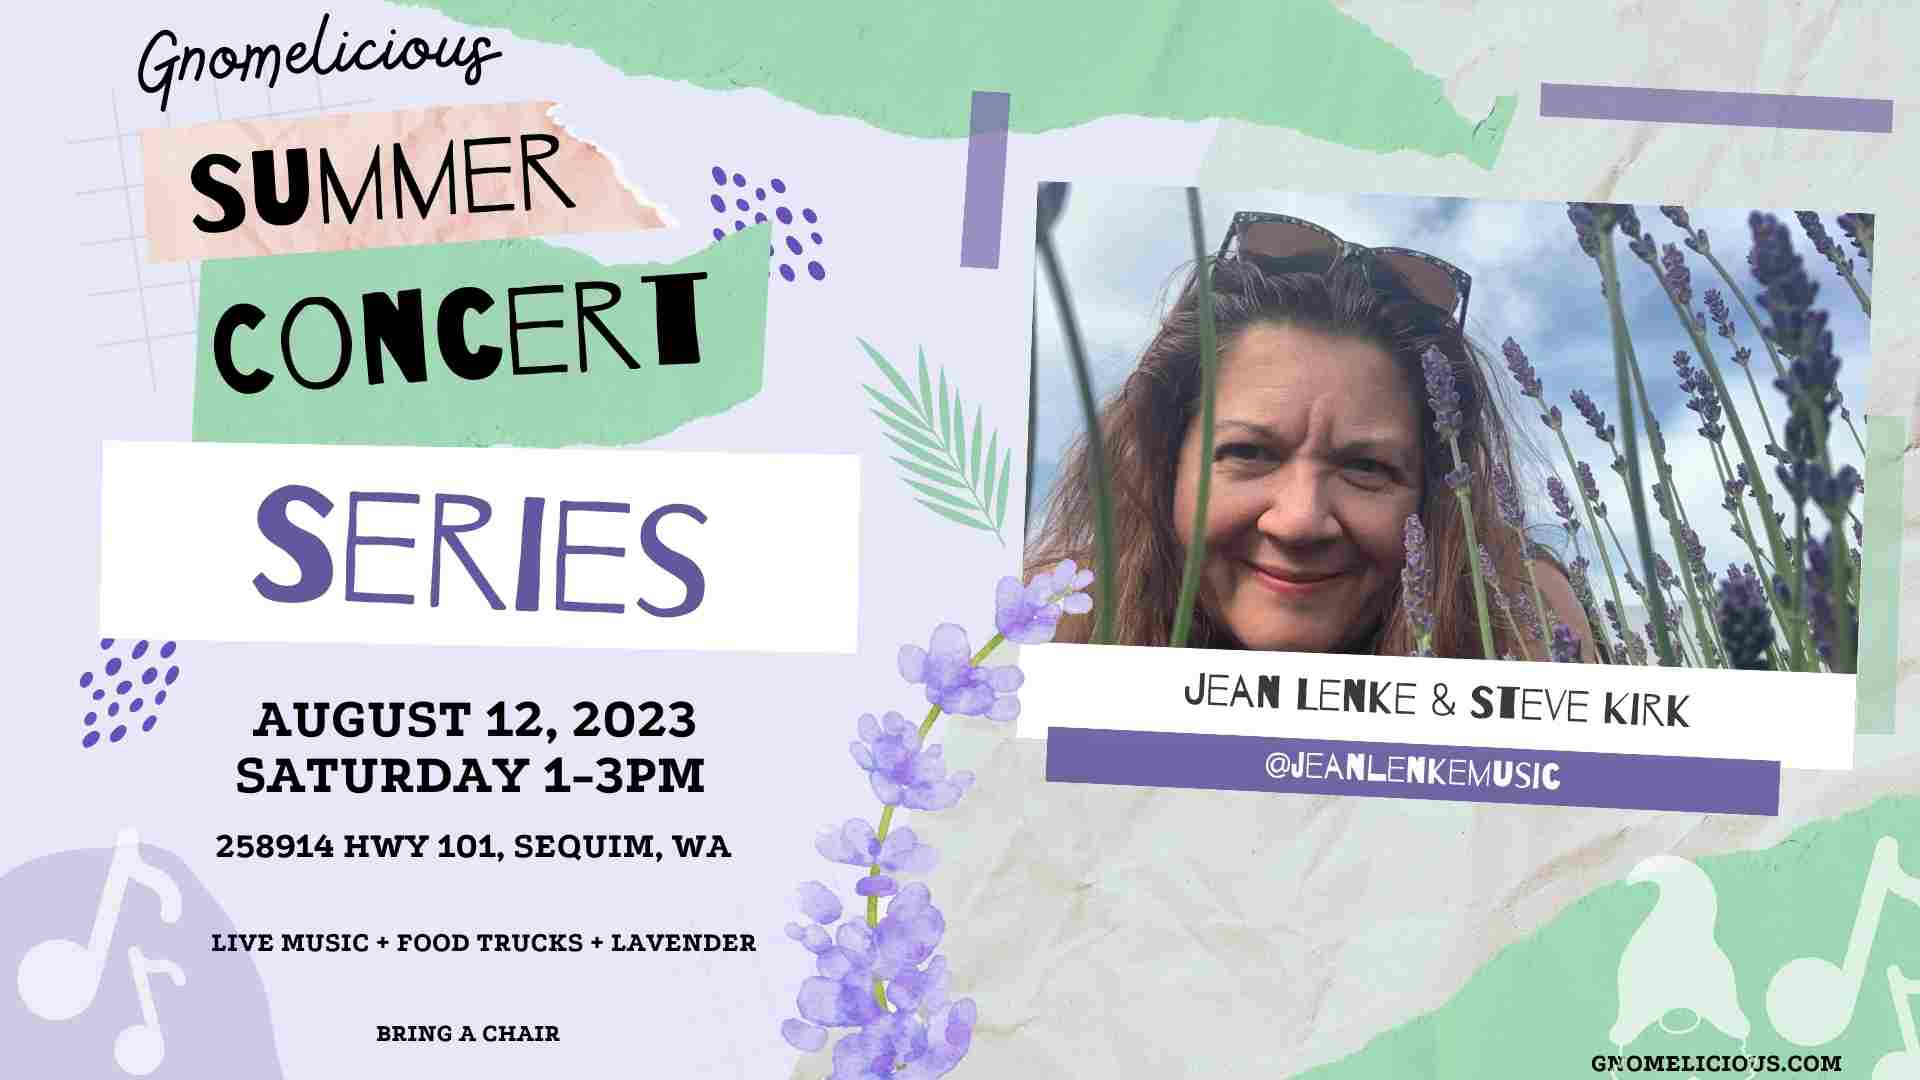 Gnomelicious Lavender Farm Summer Concert Series "Jean Lenke & Steve Kirk"